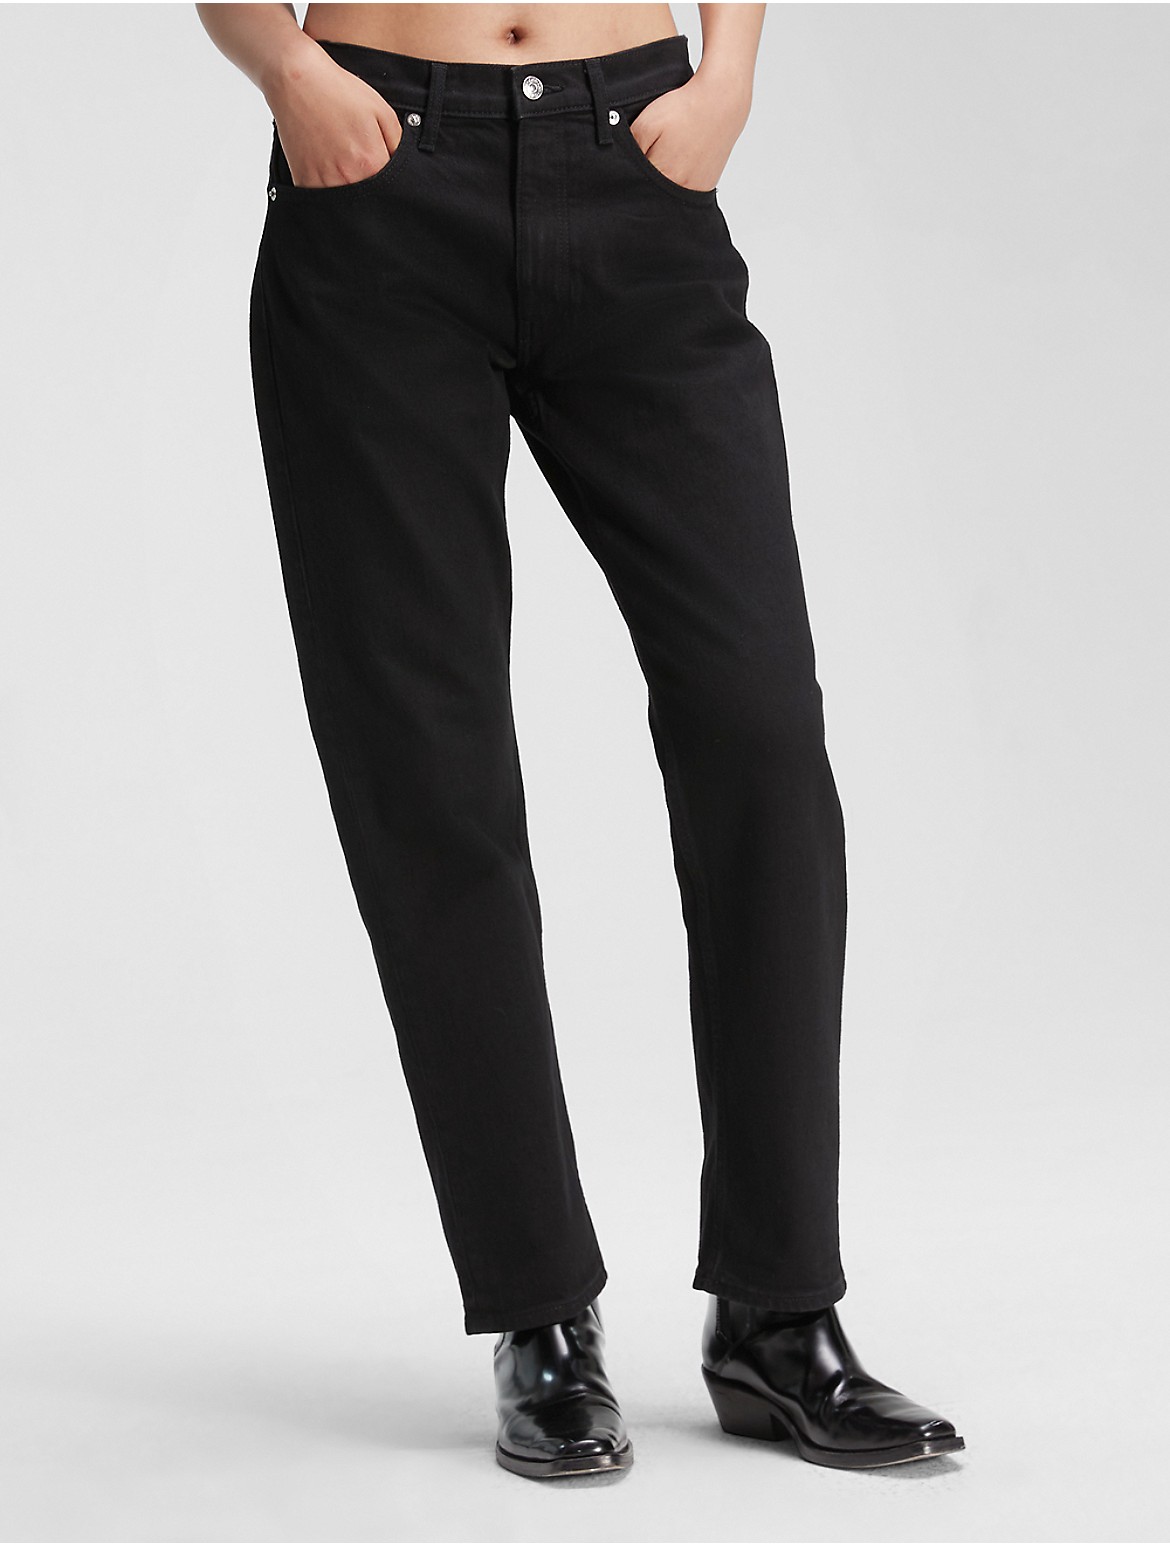 Calvin Klein Women's Original Straight Fit Jean - Black - 25